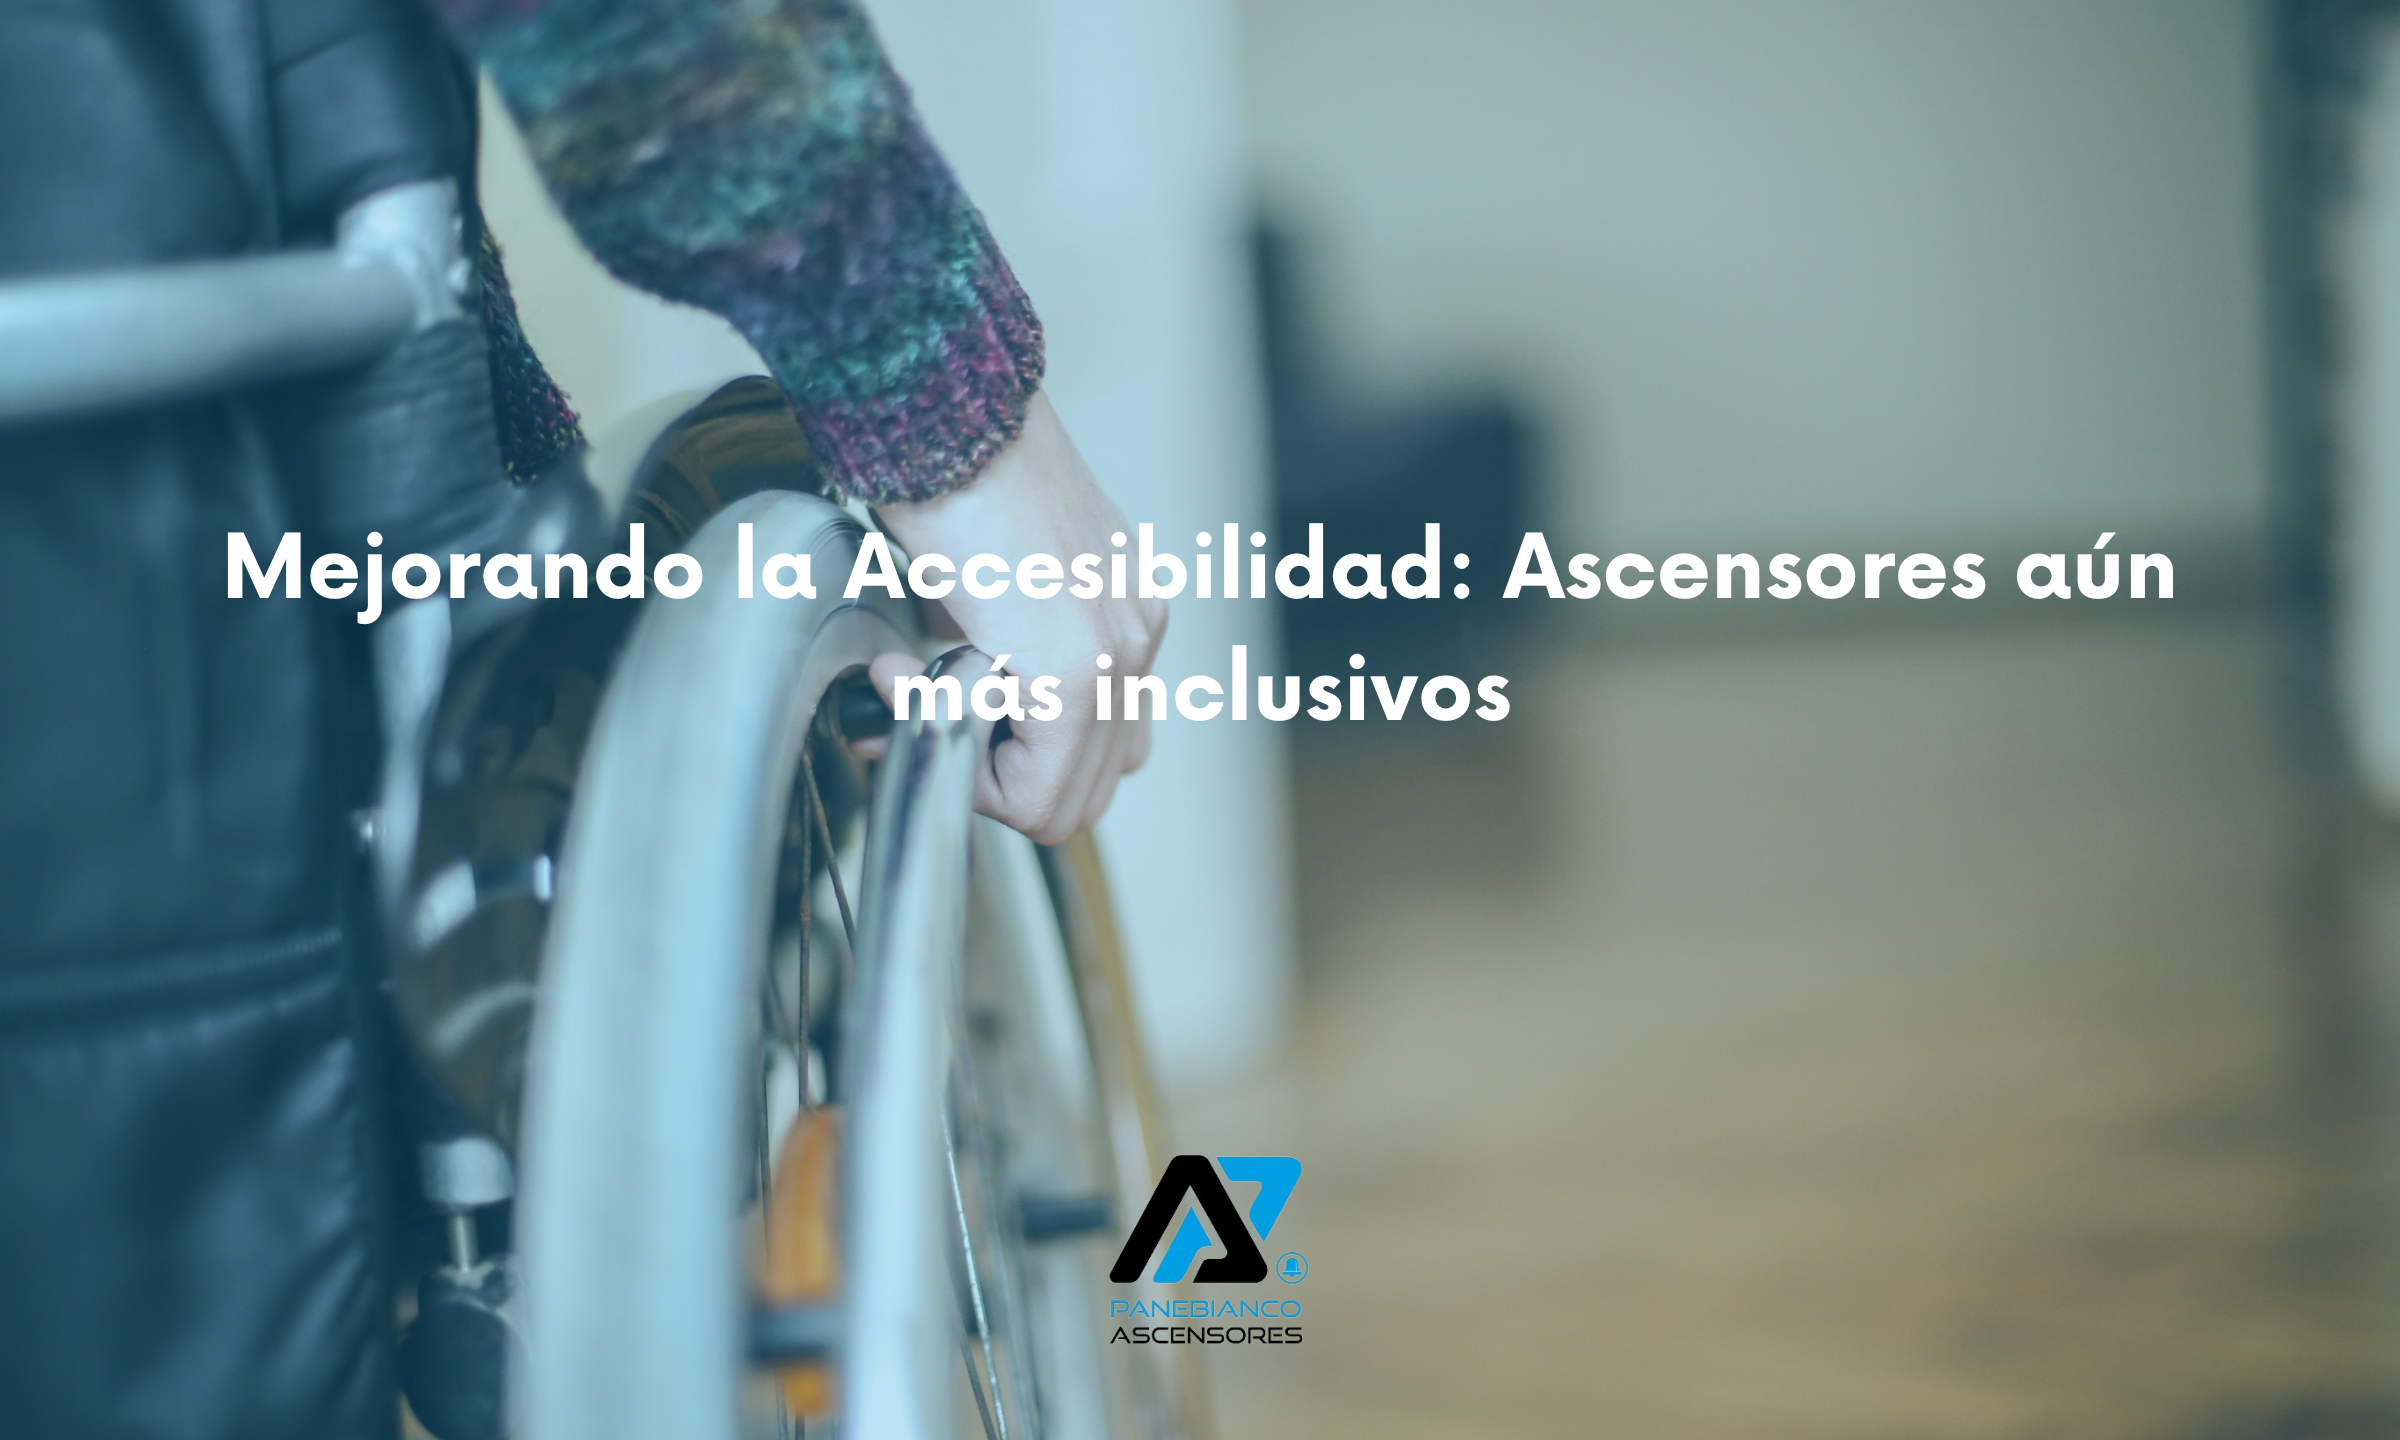 Mejorando la Accesibilidad: Ascensores aún más inclusivos